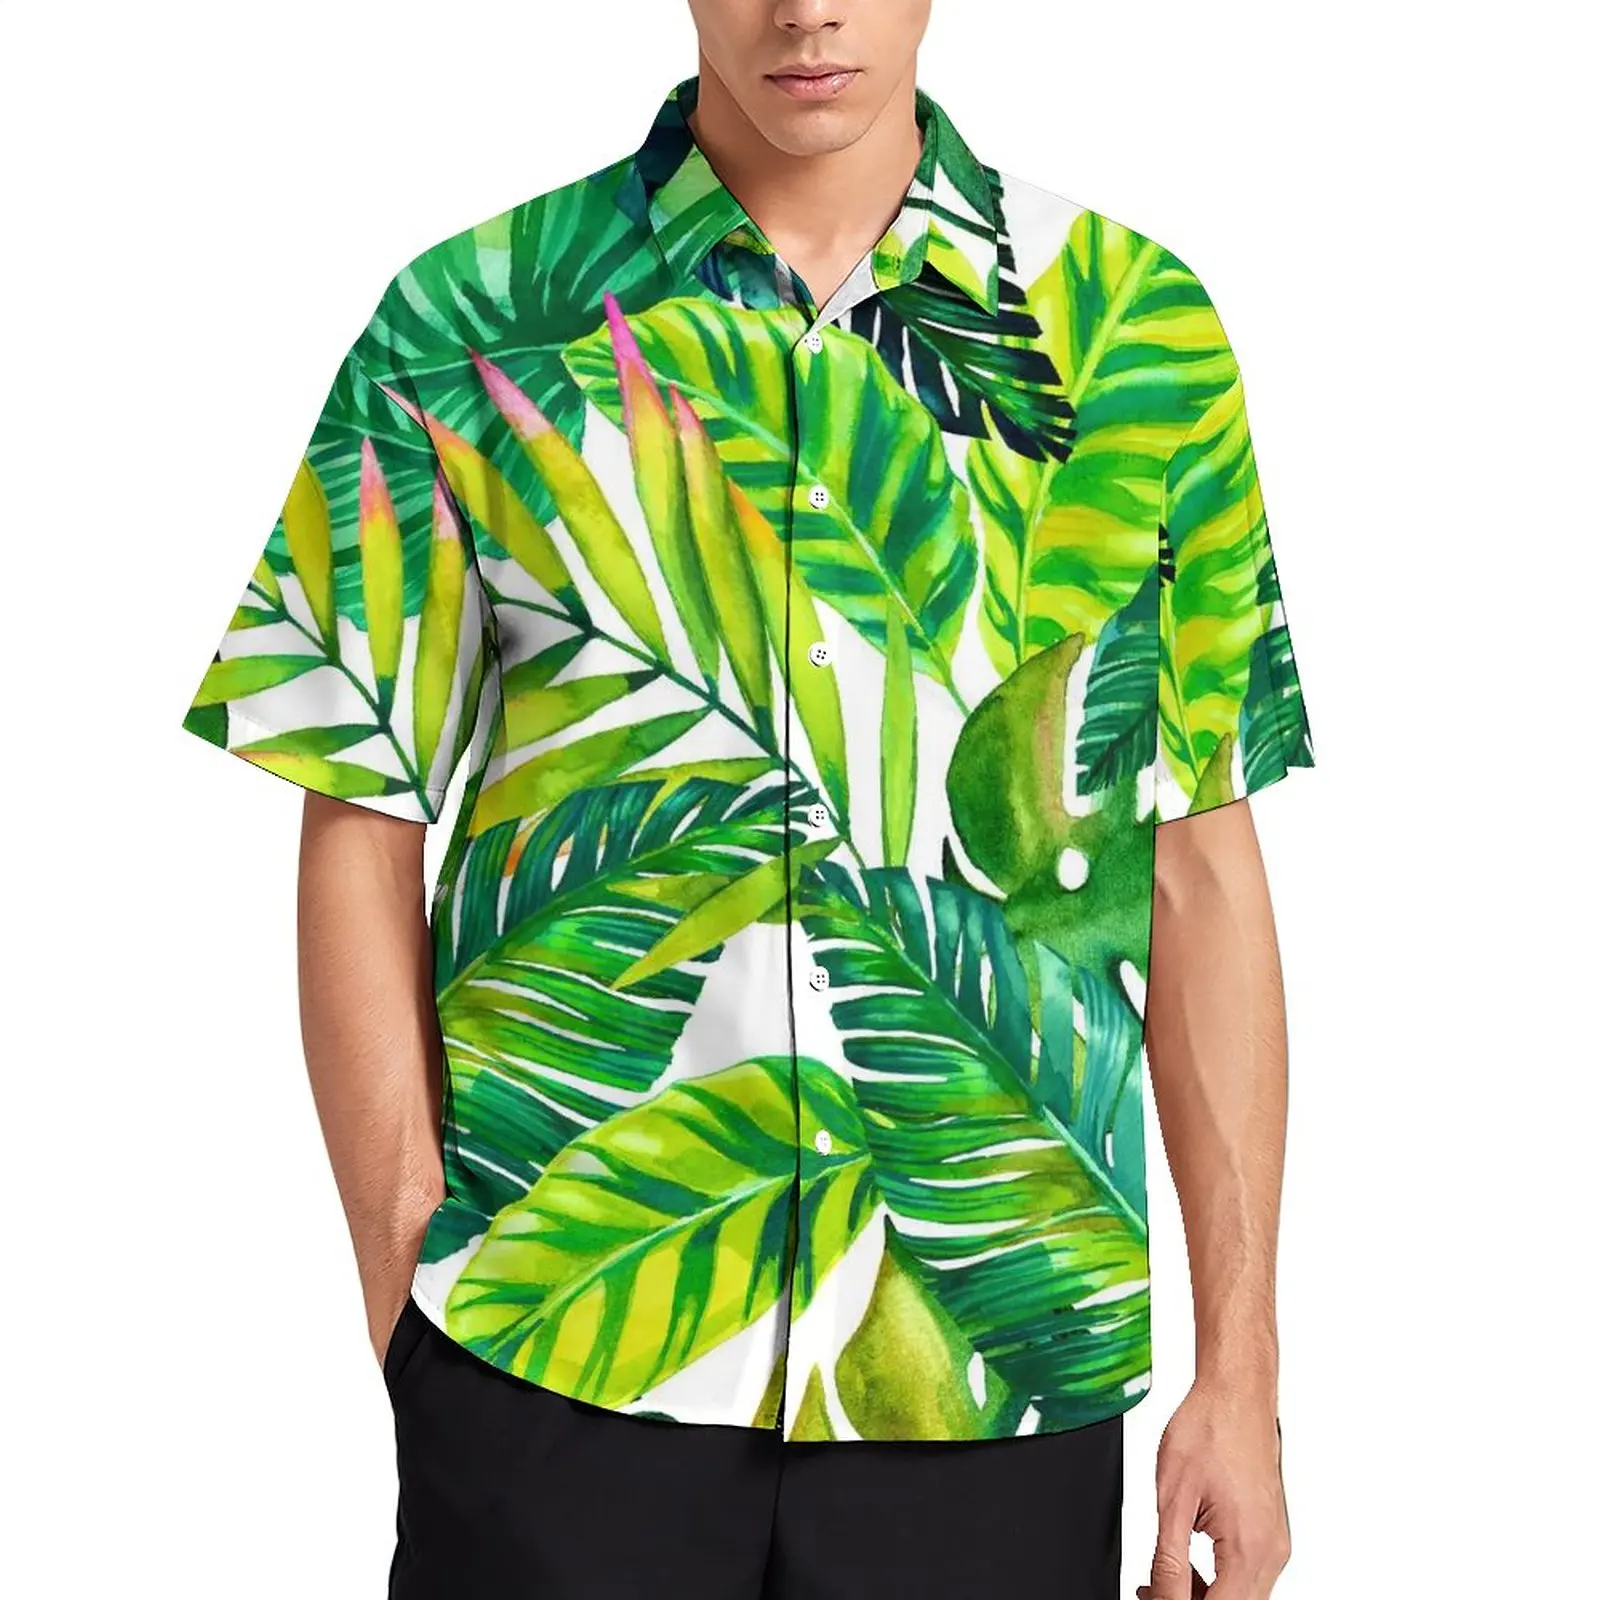 

Повседневная рубашка с зелеными пальмовыми листьями, Пляжная Свободная рубашка с принтом тропических растений, Гавайские Ретро Блузки, диз...